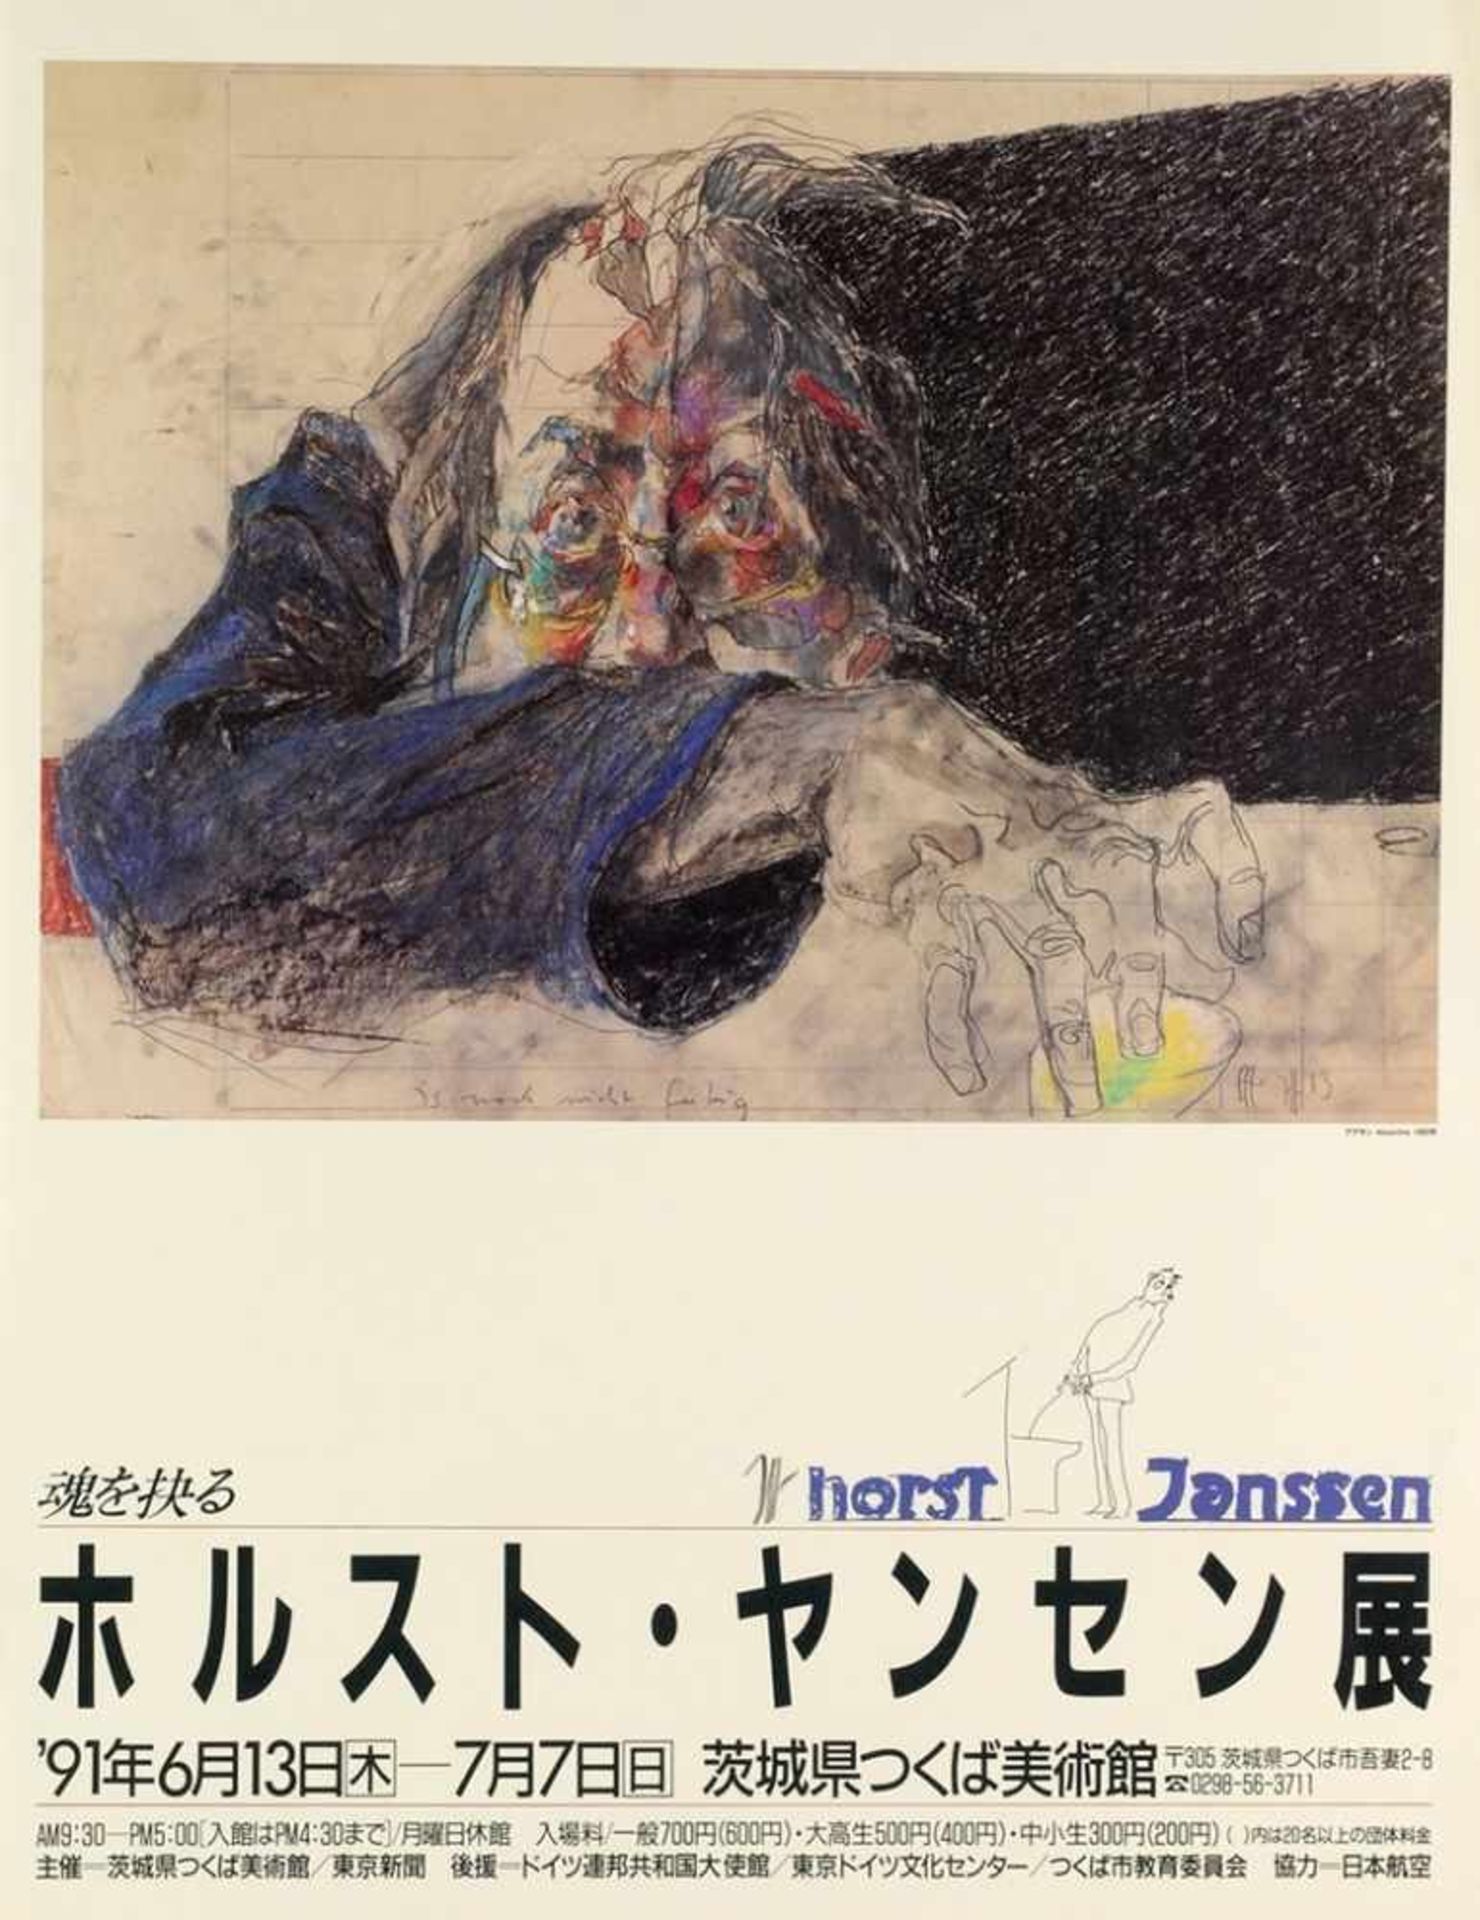 Janssen, HorstFarboffset. "Absinth". Plakat für eine Ausstellung in Japan. Im Druck sign. u. dat.